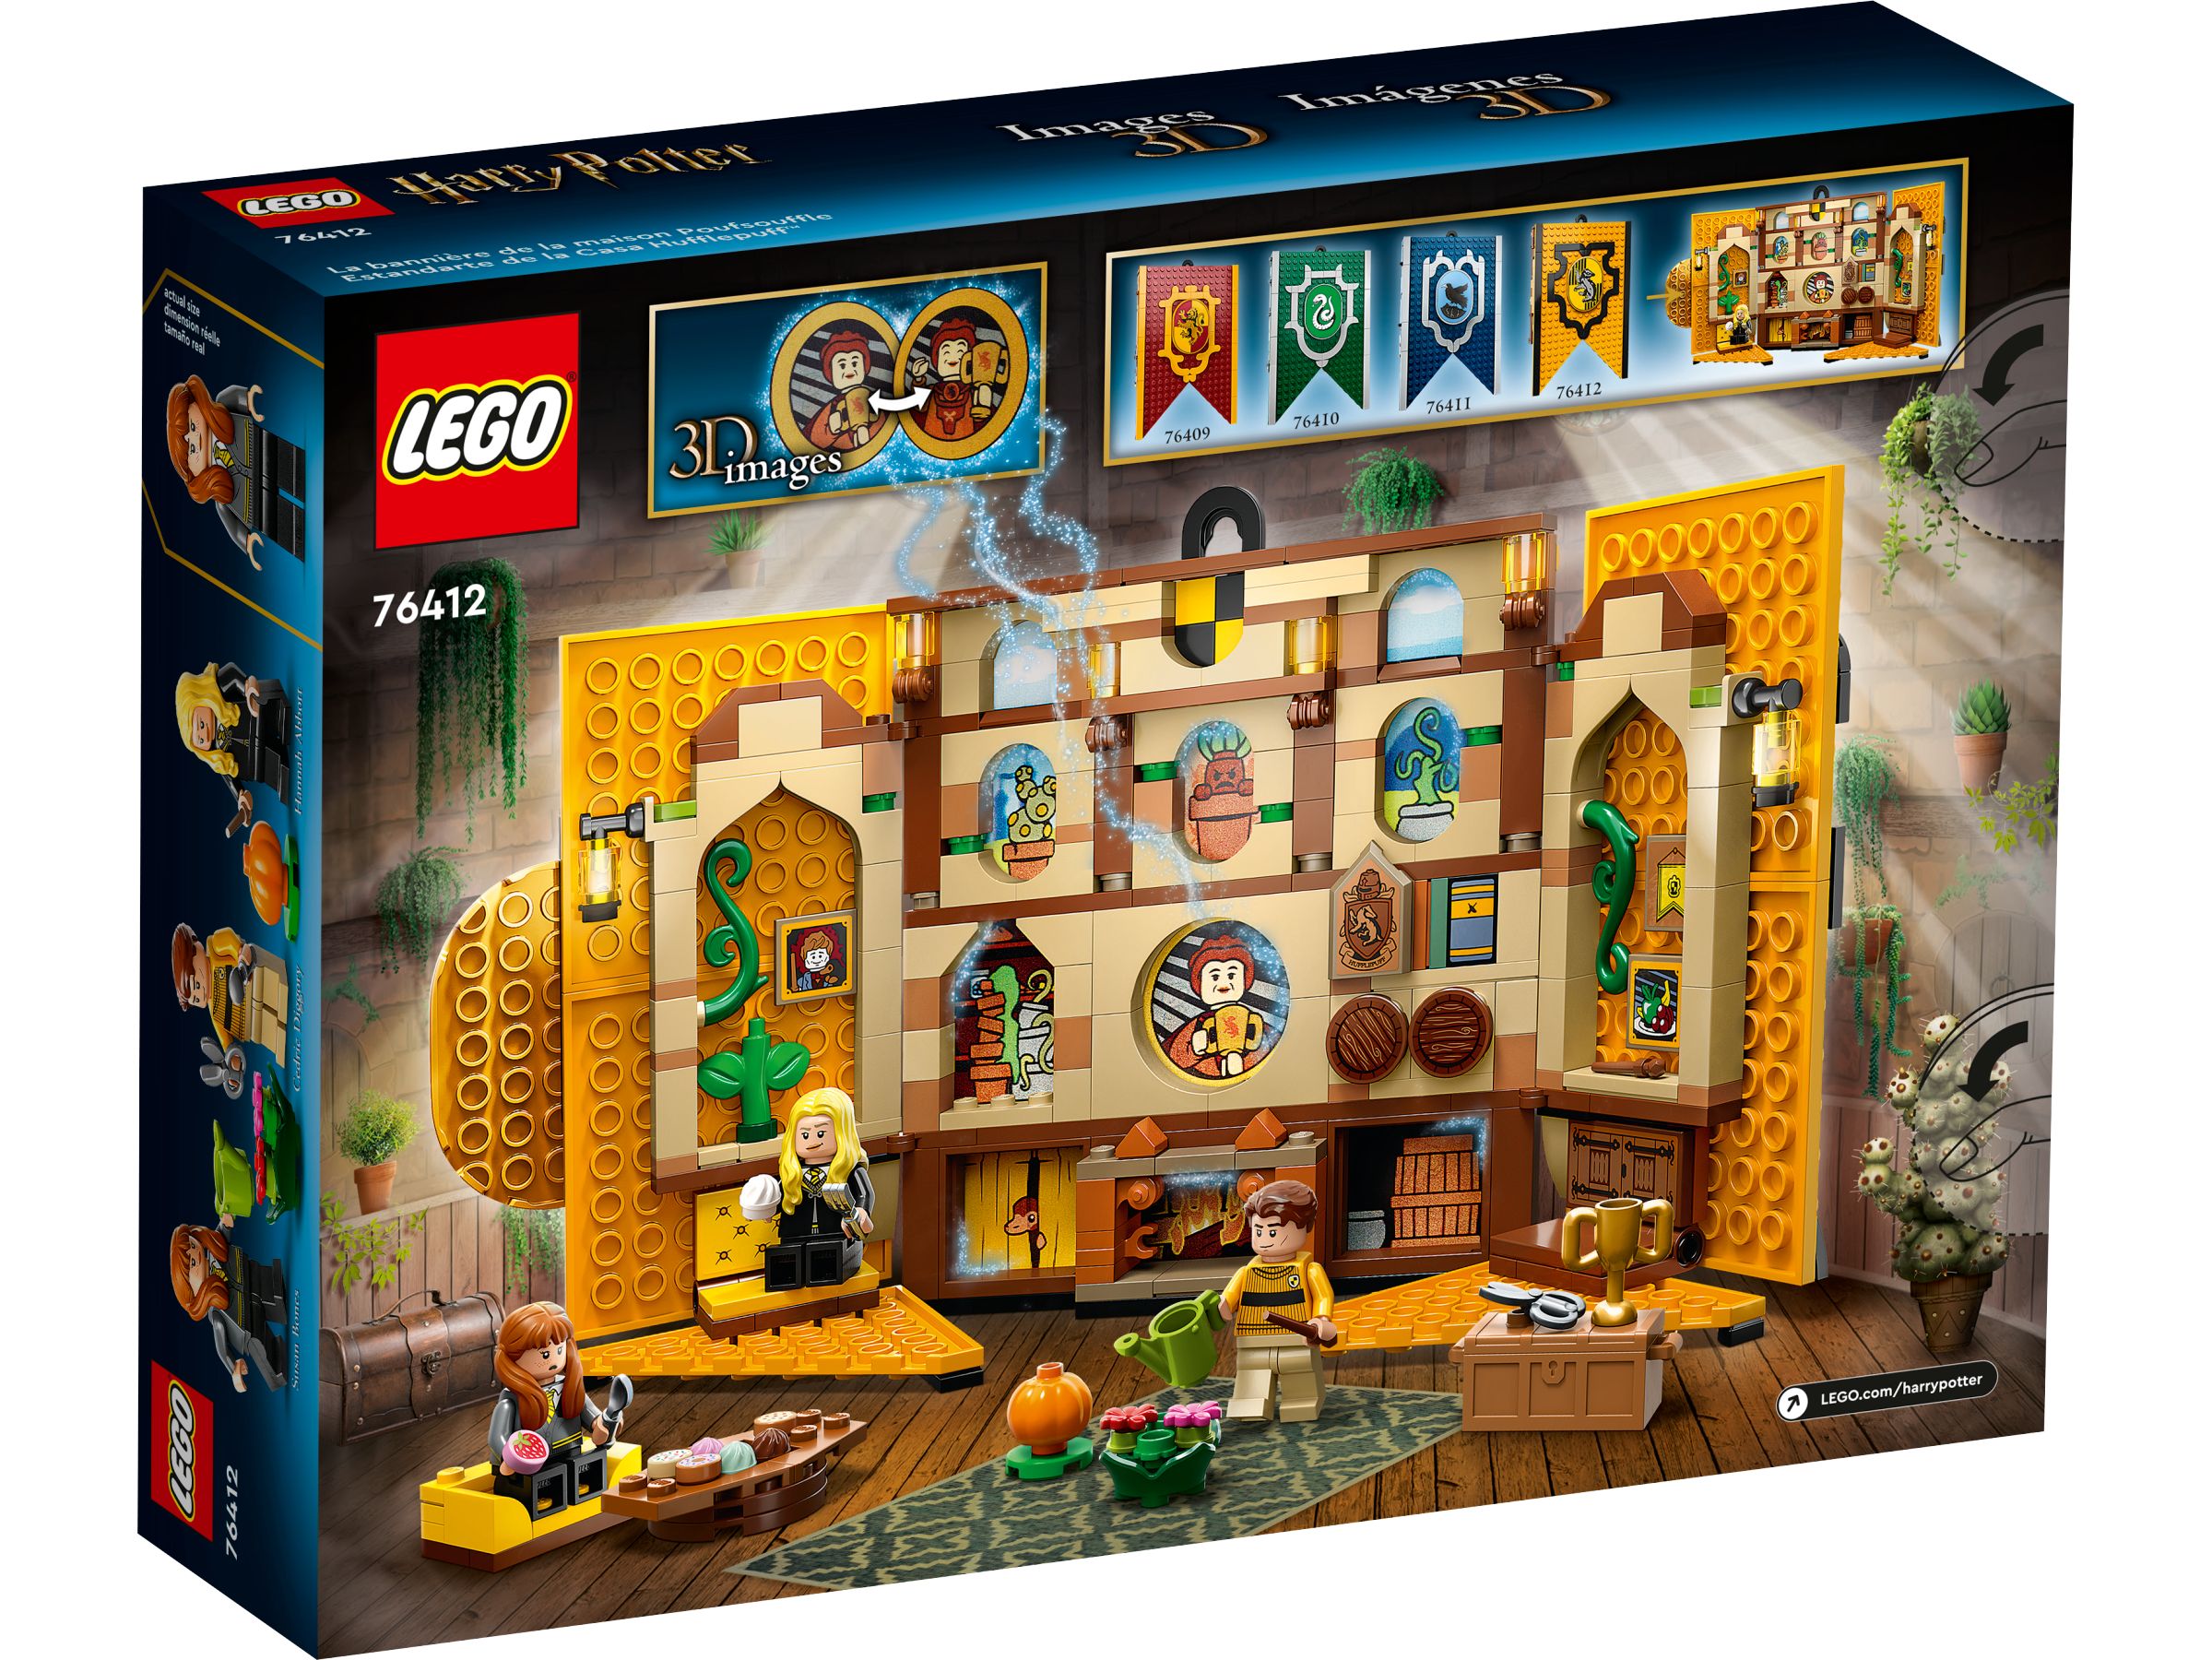 LEGO Harry Potter 5008138 Paket: Treue und Zielstrebigkeit LEGO_76412_alt2.jpg